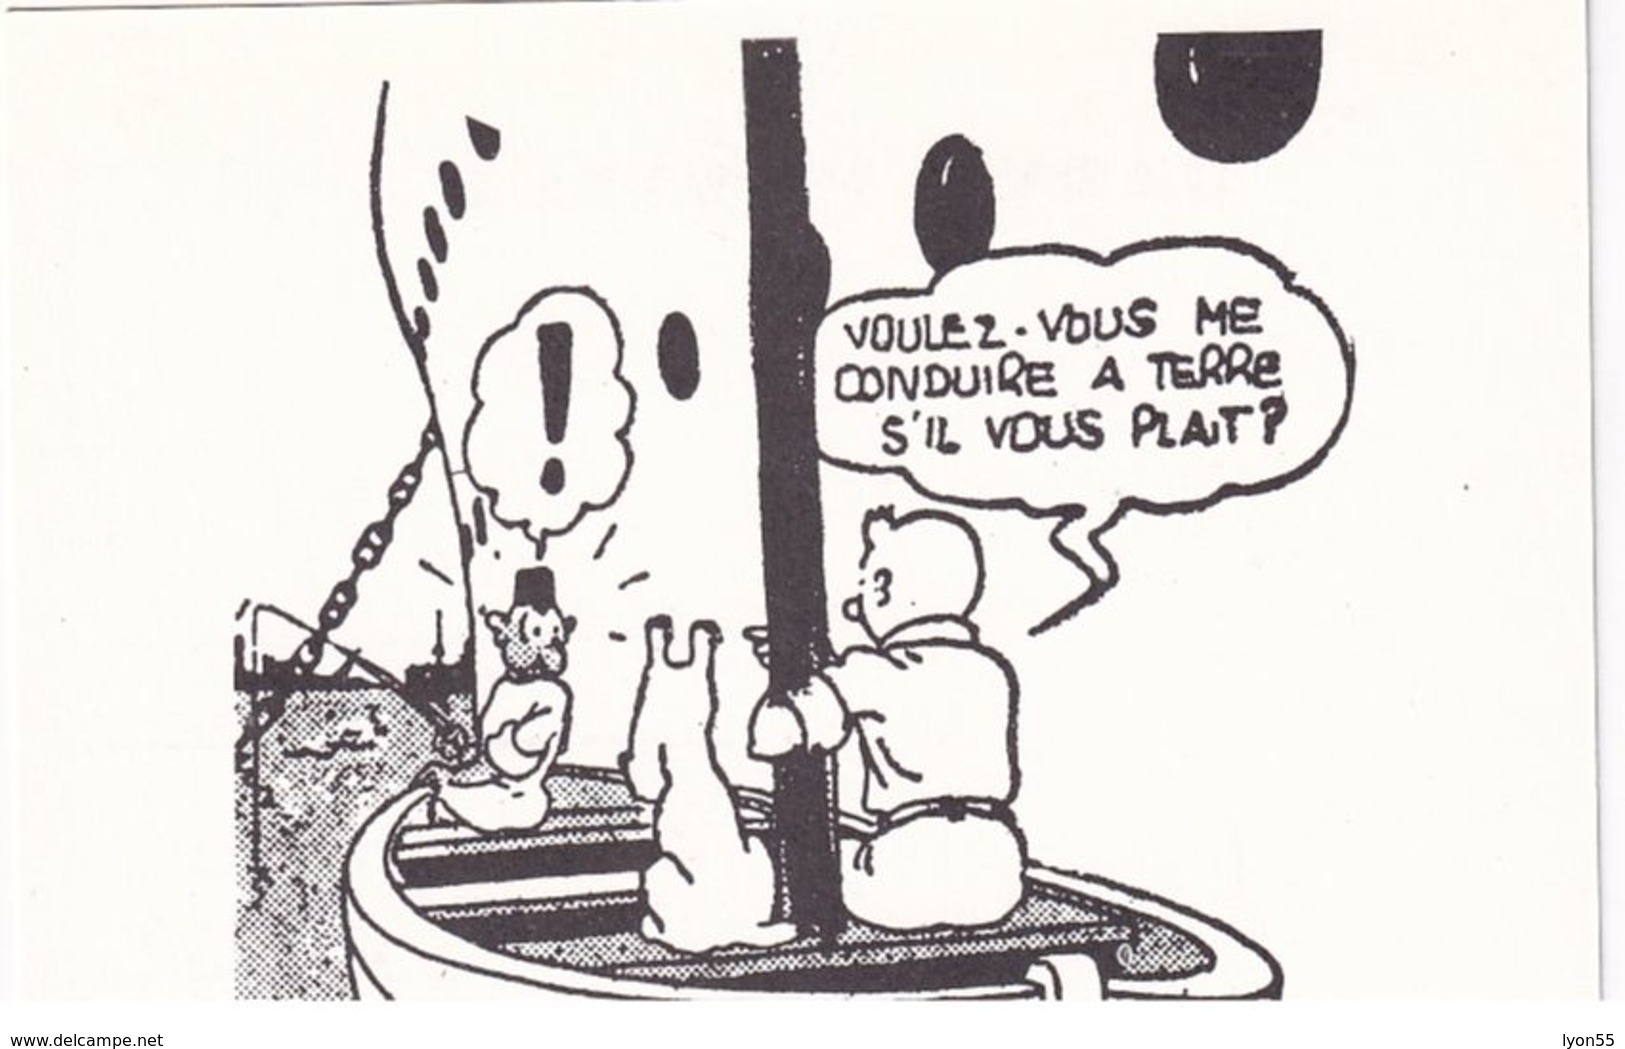 Tintin Lot de 11 cartes reproduction de cases Hergé